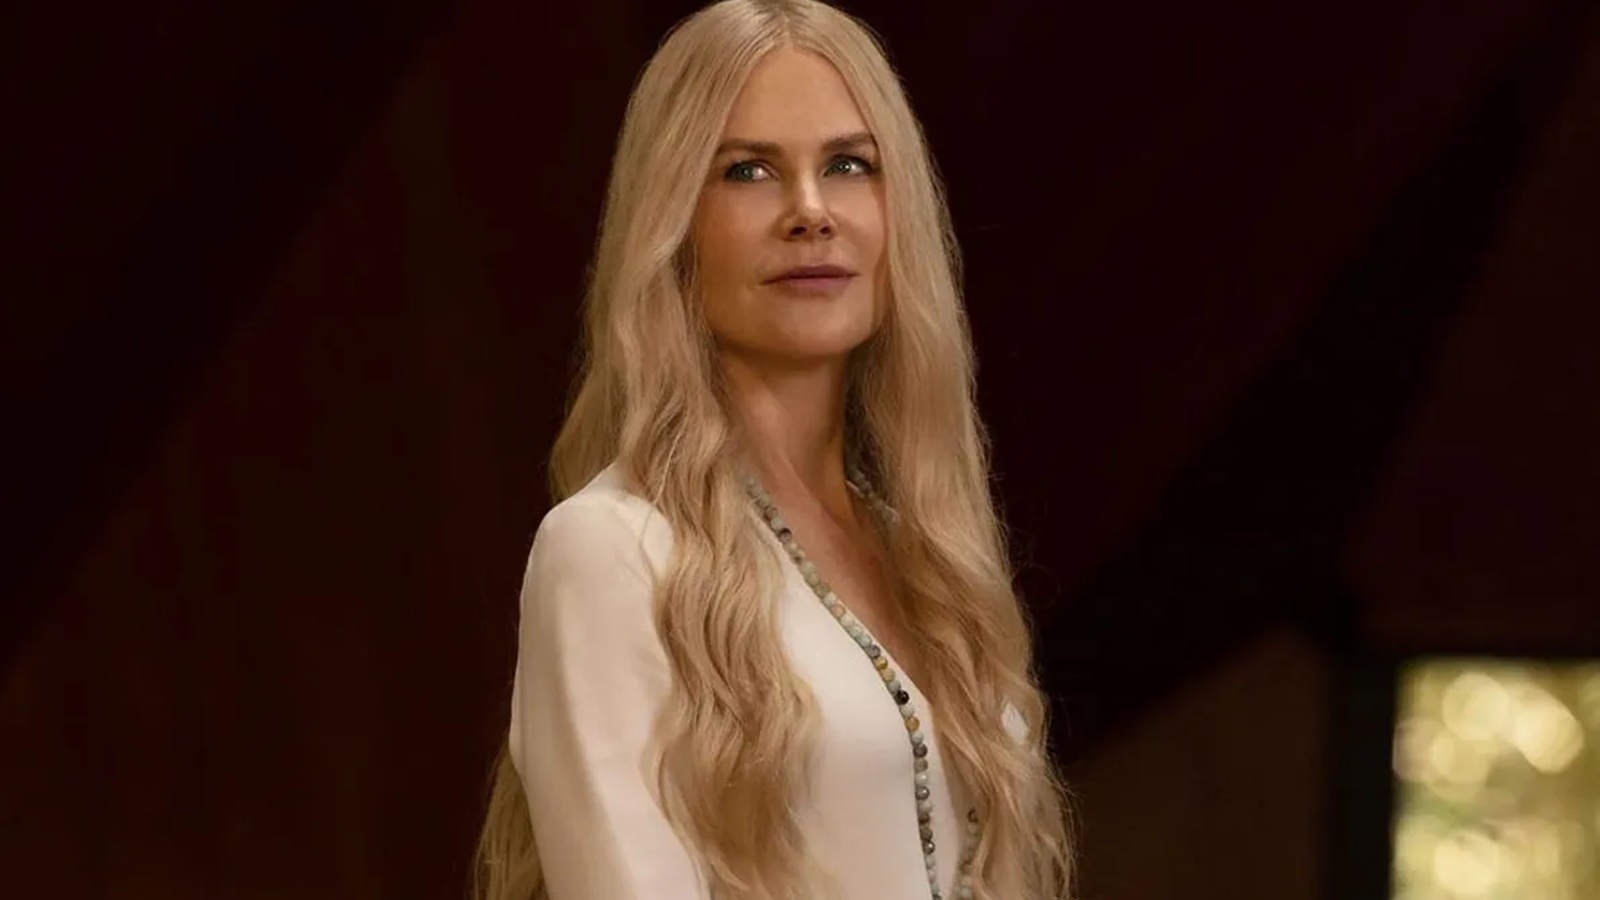 Nove perfetti sconosciuti tornerà con la stagione 2, confermata la presenza di Nicole Kidman